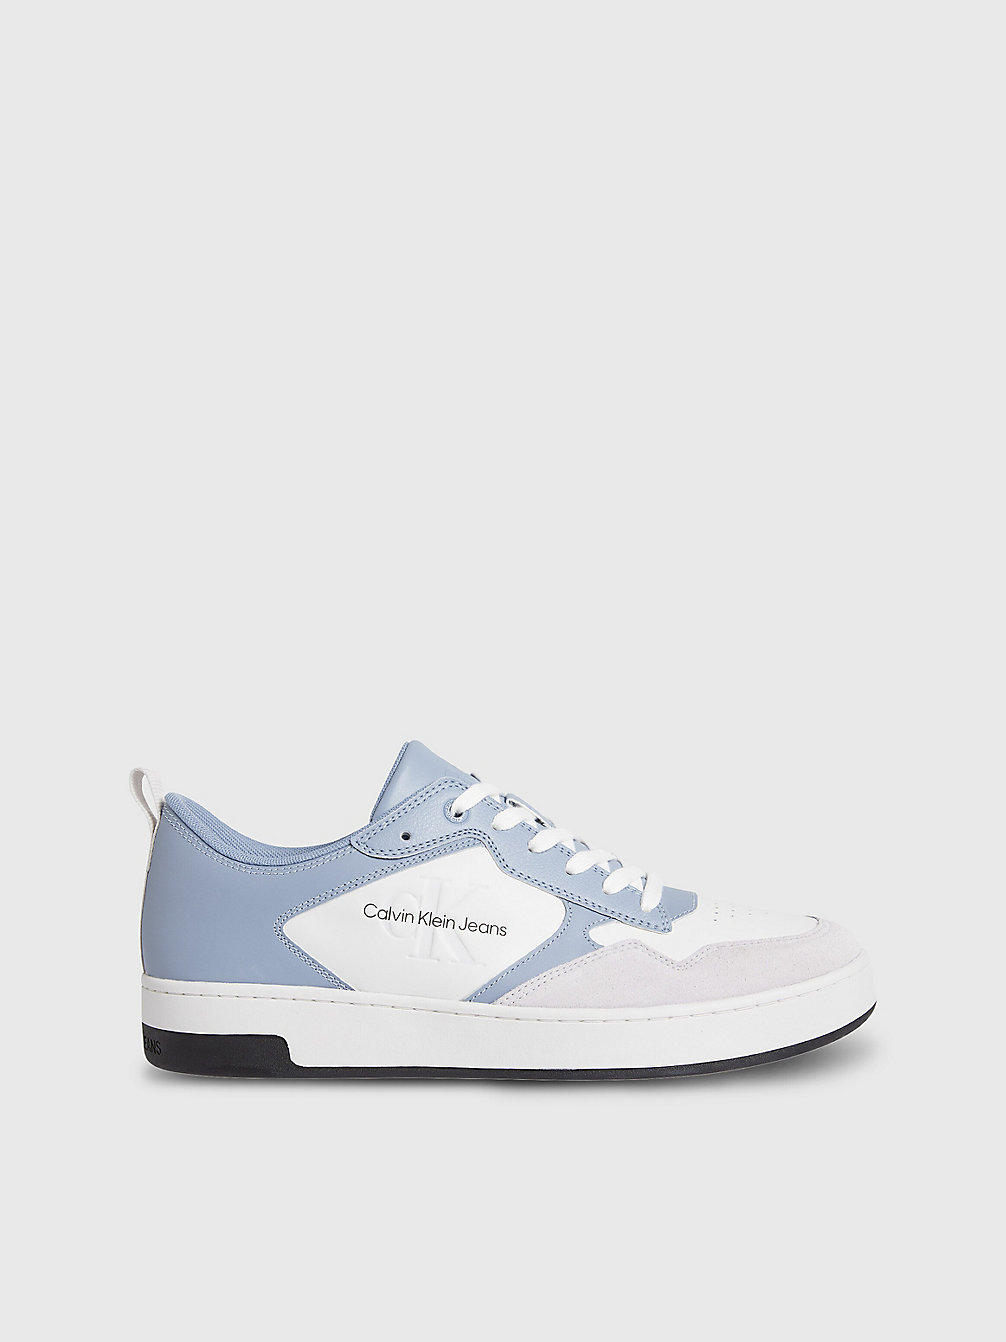 ICELAND BLUE/WHITE/GHOST GREY Leder-Sneakers Mit Logo undefined Herren Calvin Klein